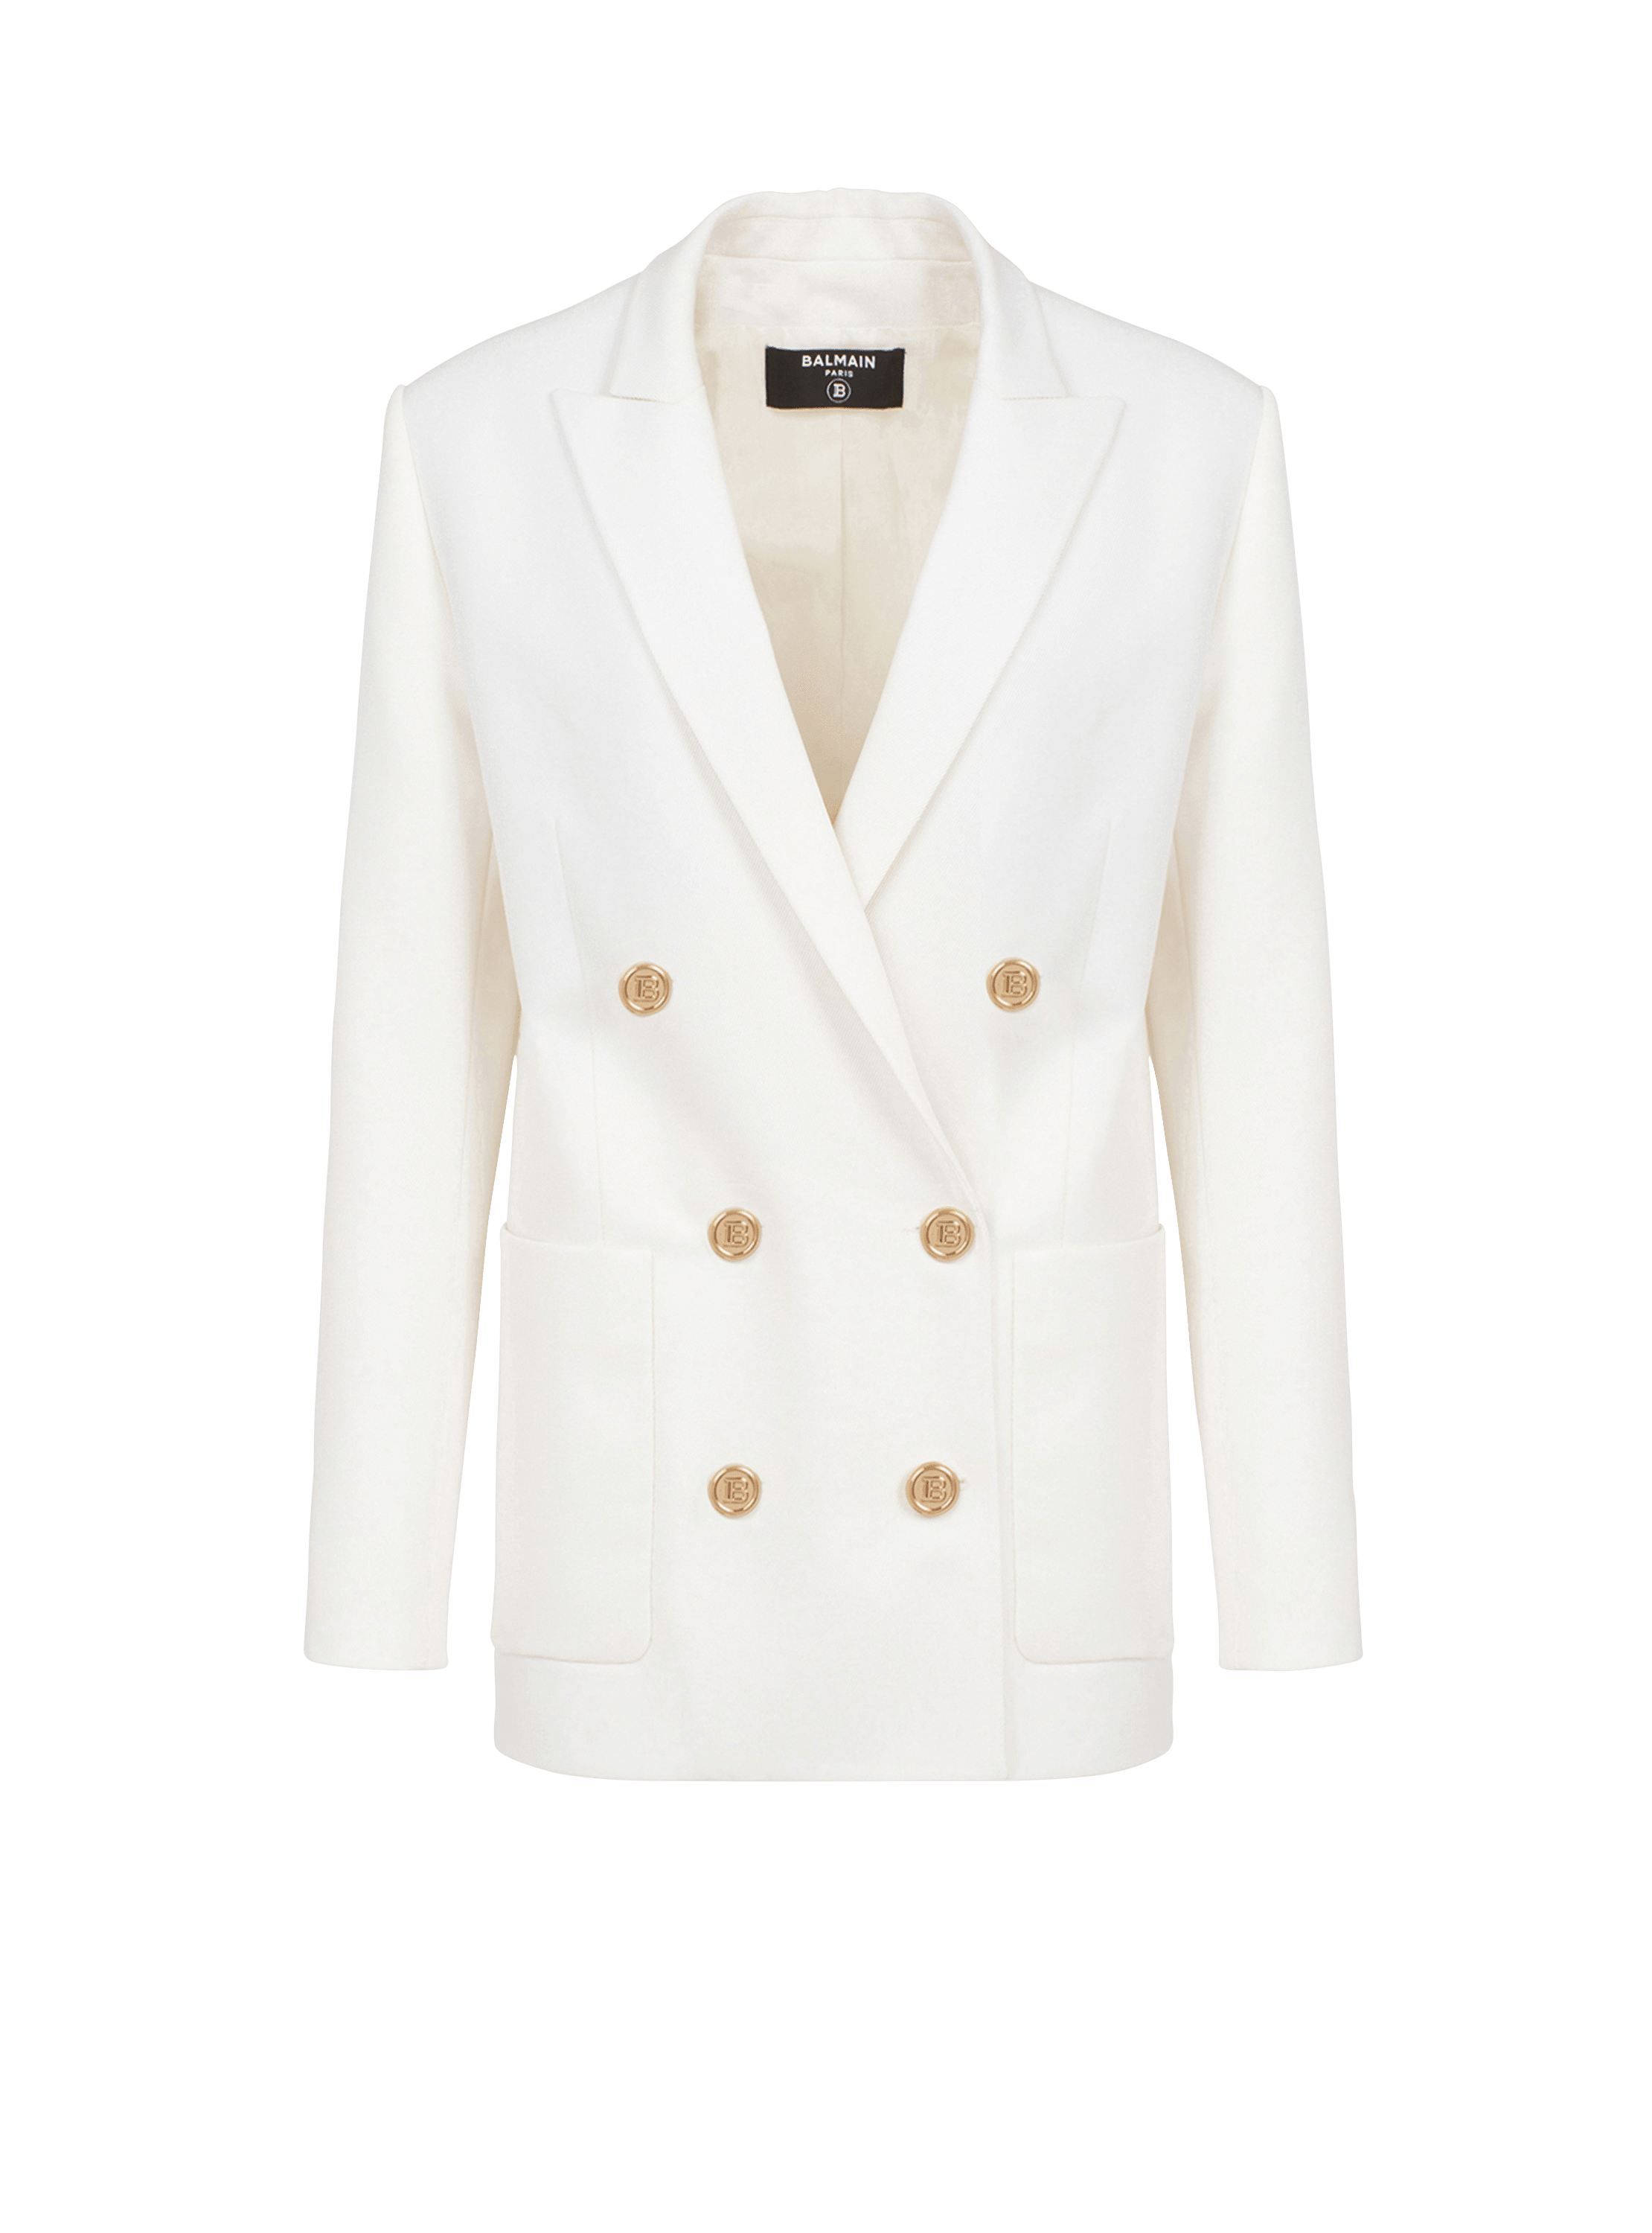 Wool double-breasted boyfriend jacket white - Women | BALMAIN